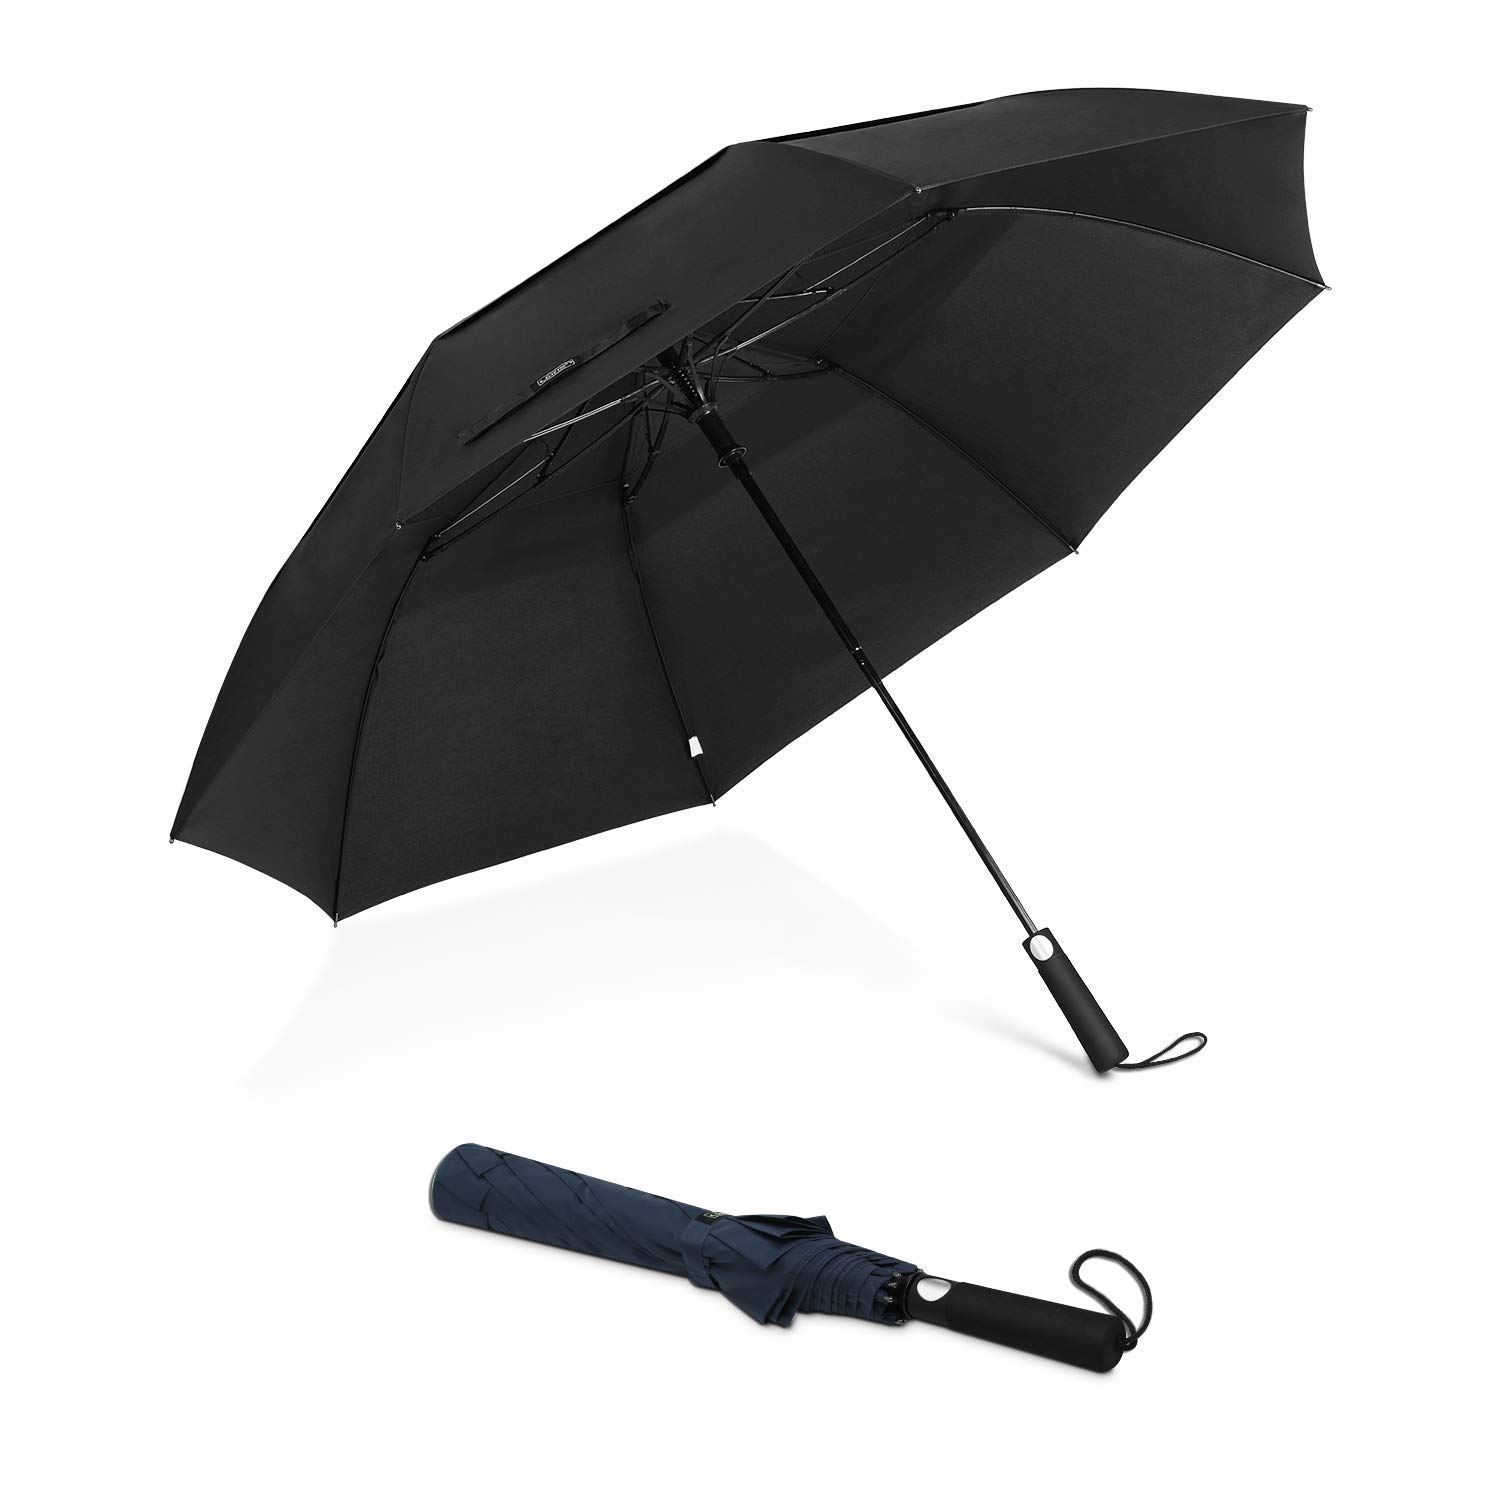 Bonne qualité vente chaude grande taille 2 parapluies de sport